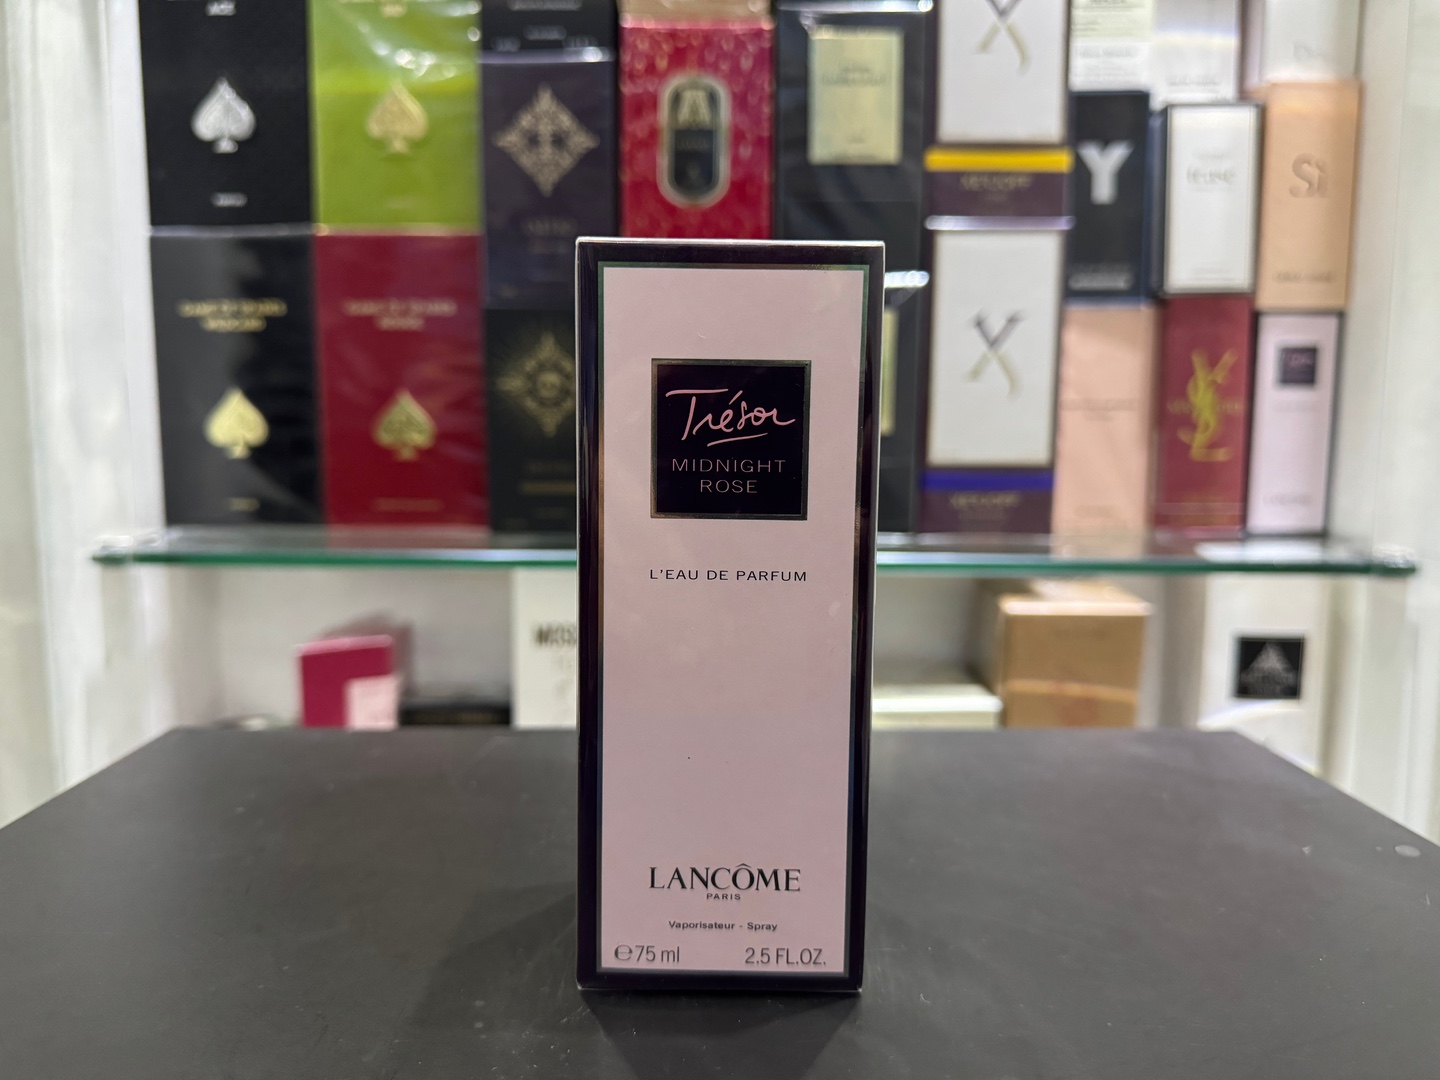 joyas, relojes y accesorios - Perfume Tréson Midnight Rose Lancôme 75ml Nuevo,100% Originales, RD$ 5,500 NEG 0